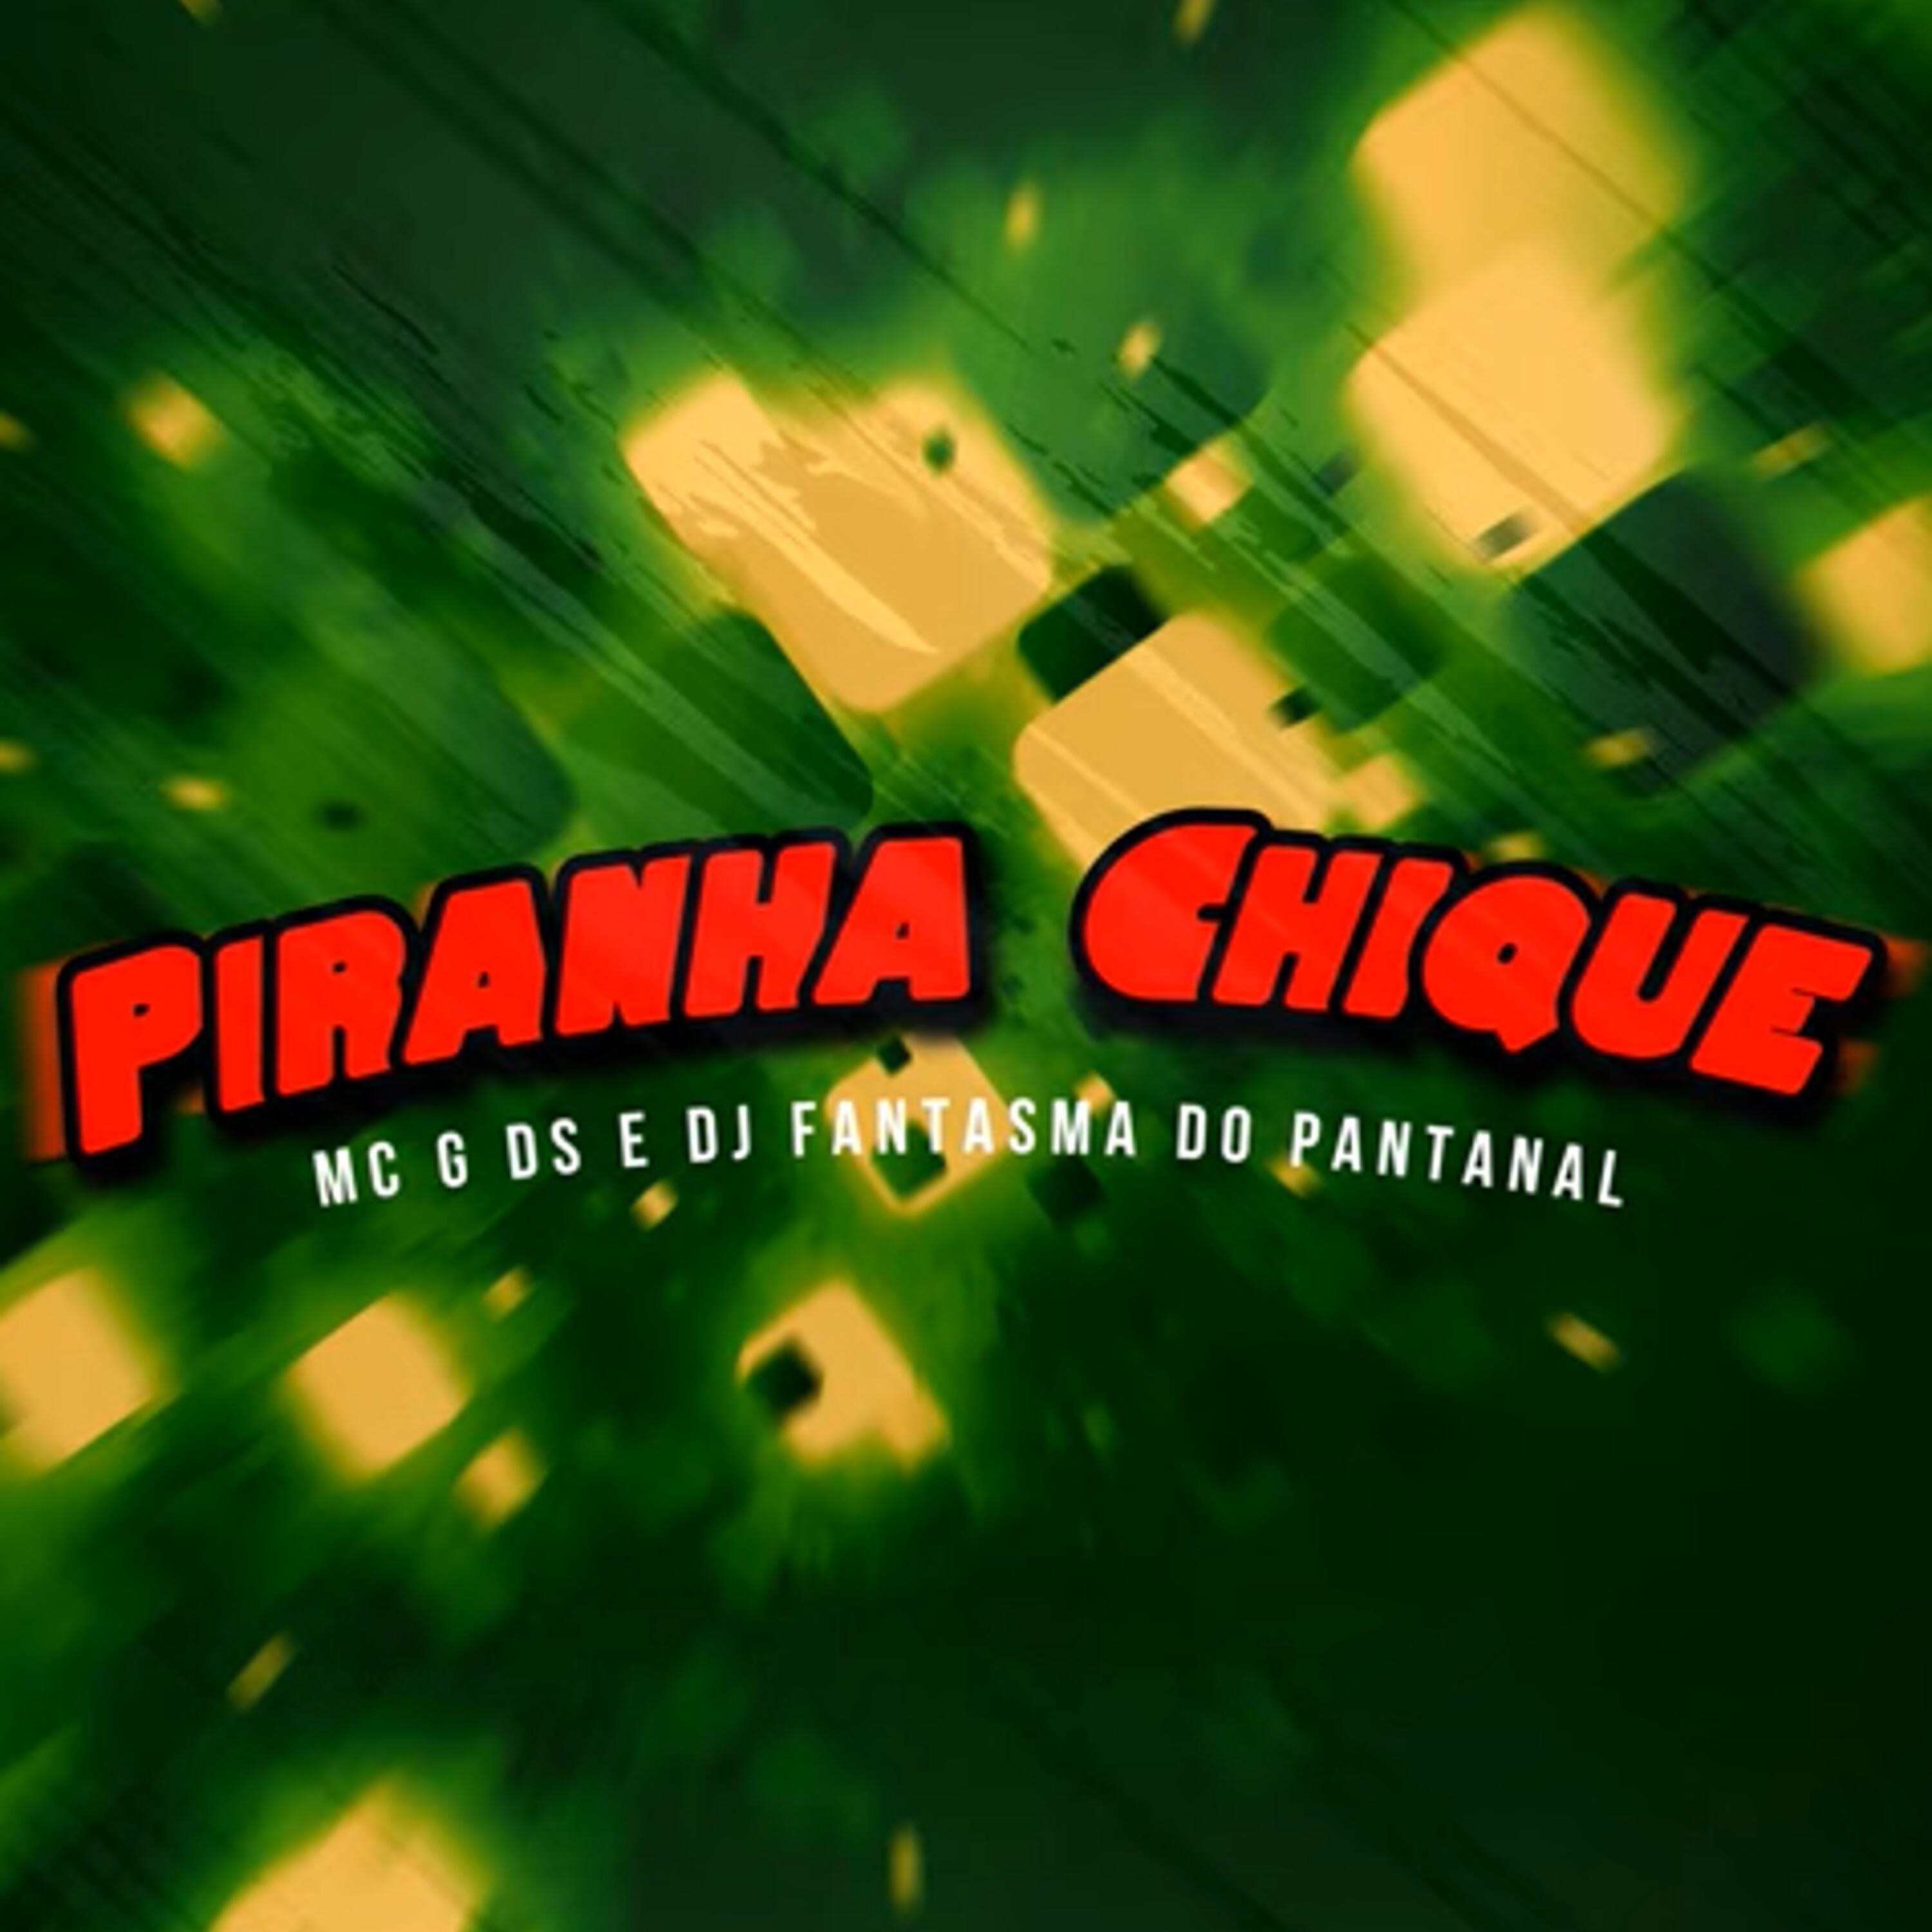 MC G DS - Piranha Chique